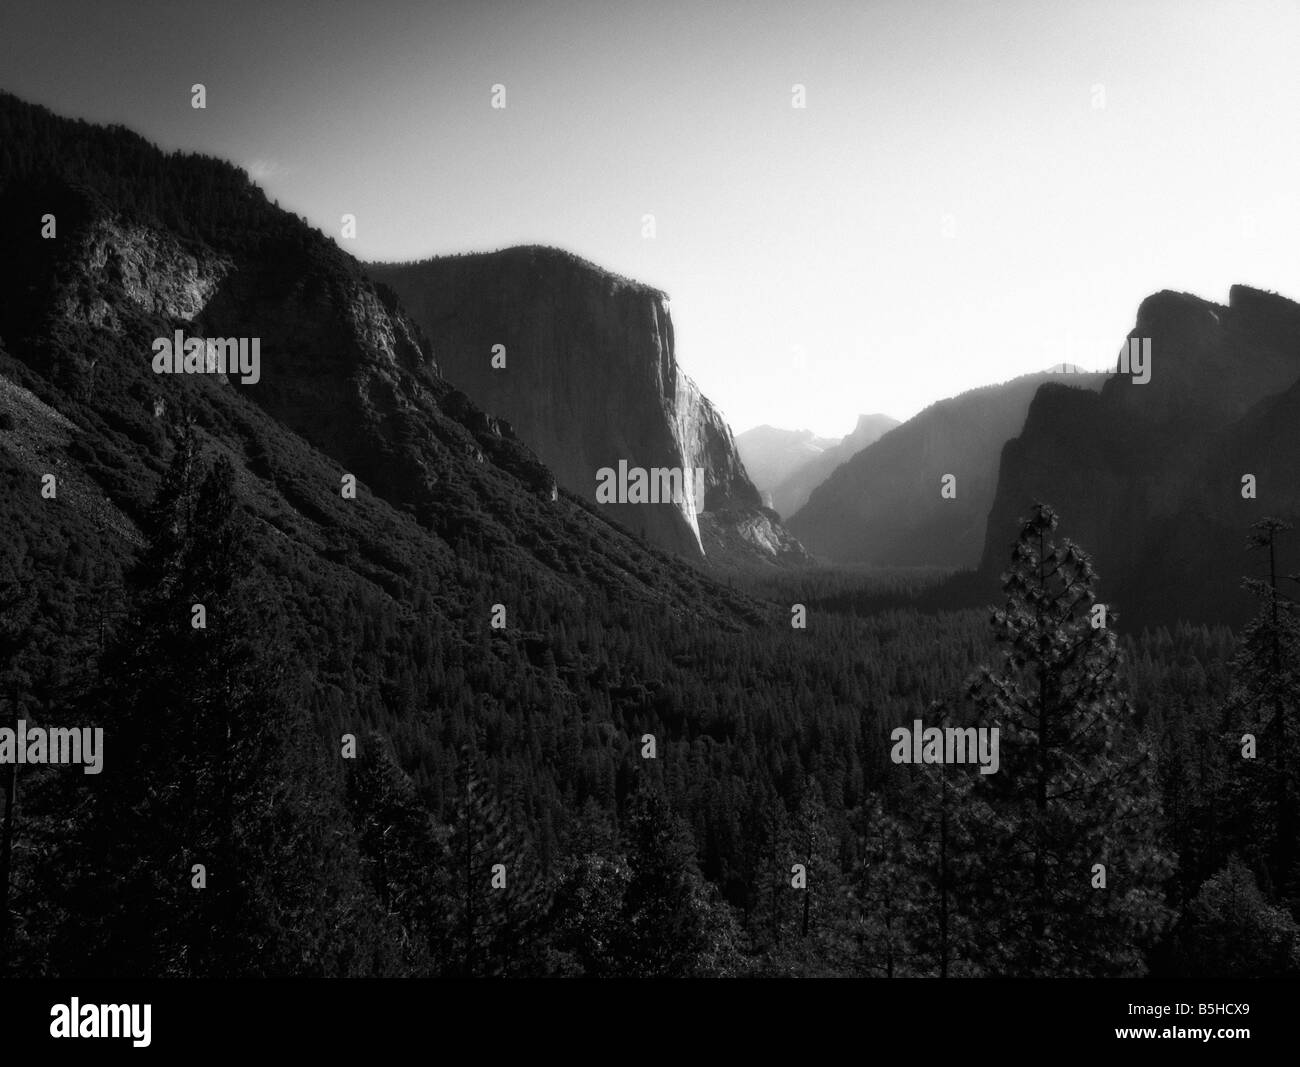 El Capitan. Le Parc National Yosemite. Désigné site du patrimoine mondial de l'Unesco en 1984. Centre-est de la Californie. USA Banque D'Images